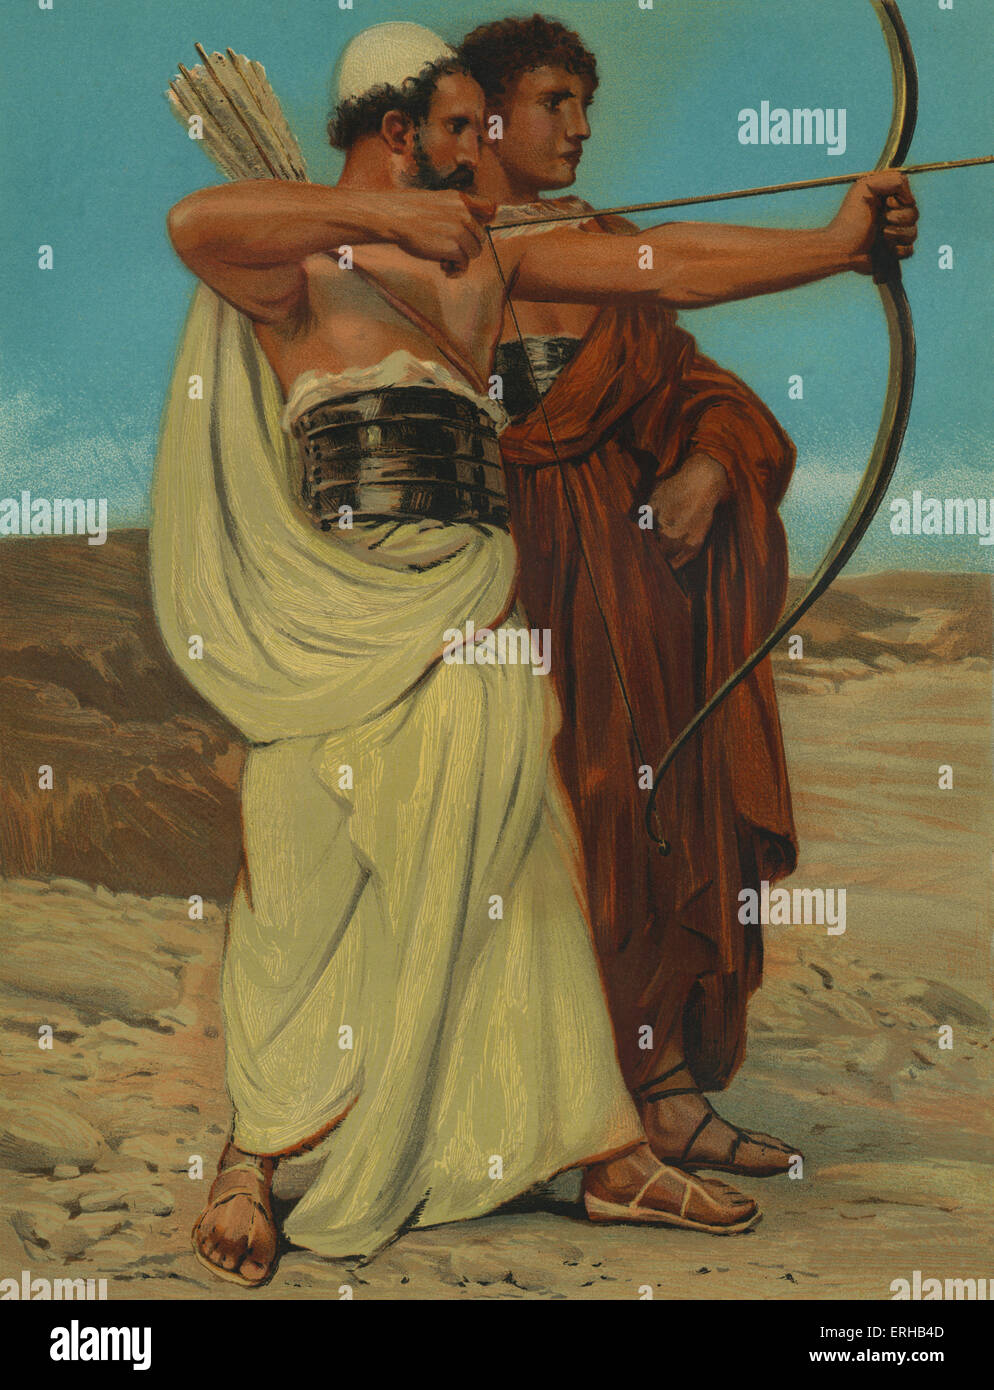 Jonathan und David, die Planung ihrer Pfeil-Signals. (Samuel 20:18-23). Illustration von Philip R Morris (1836-1902). Stockfoto